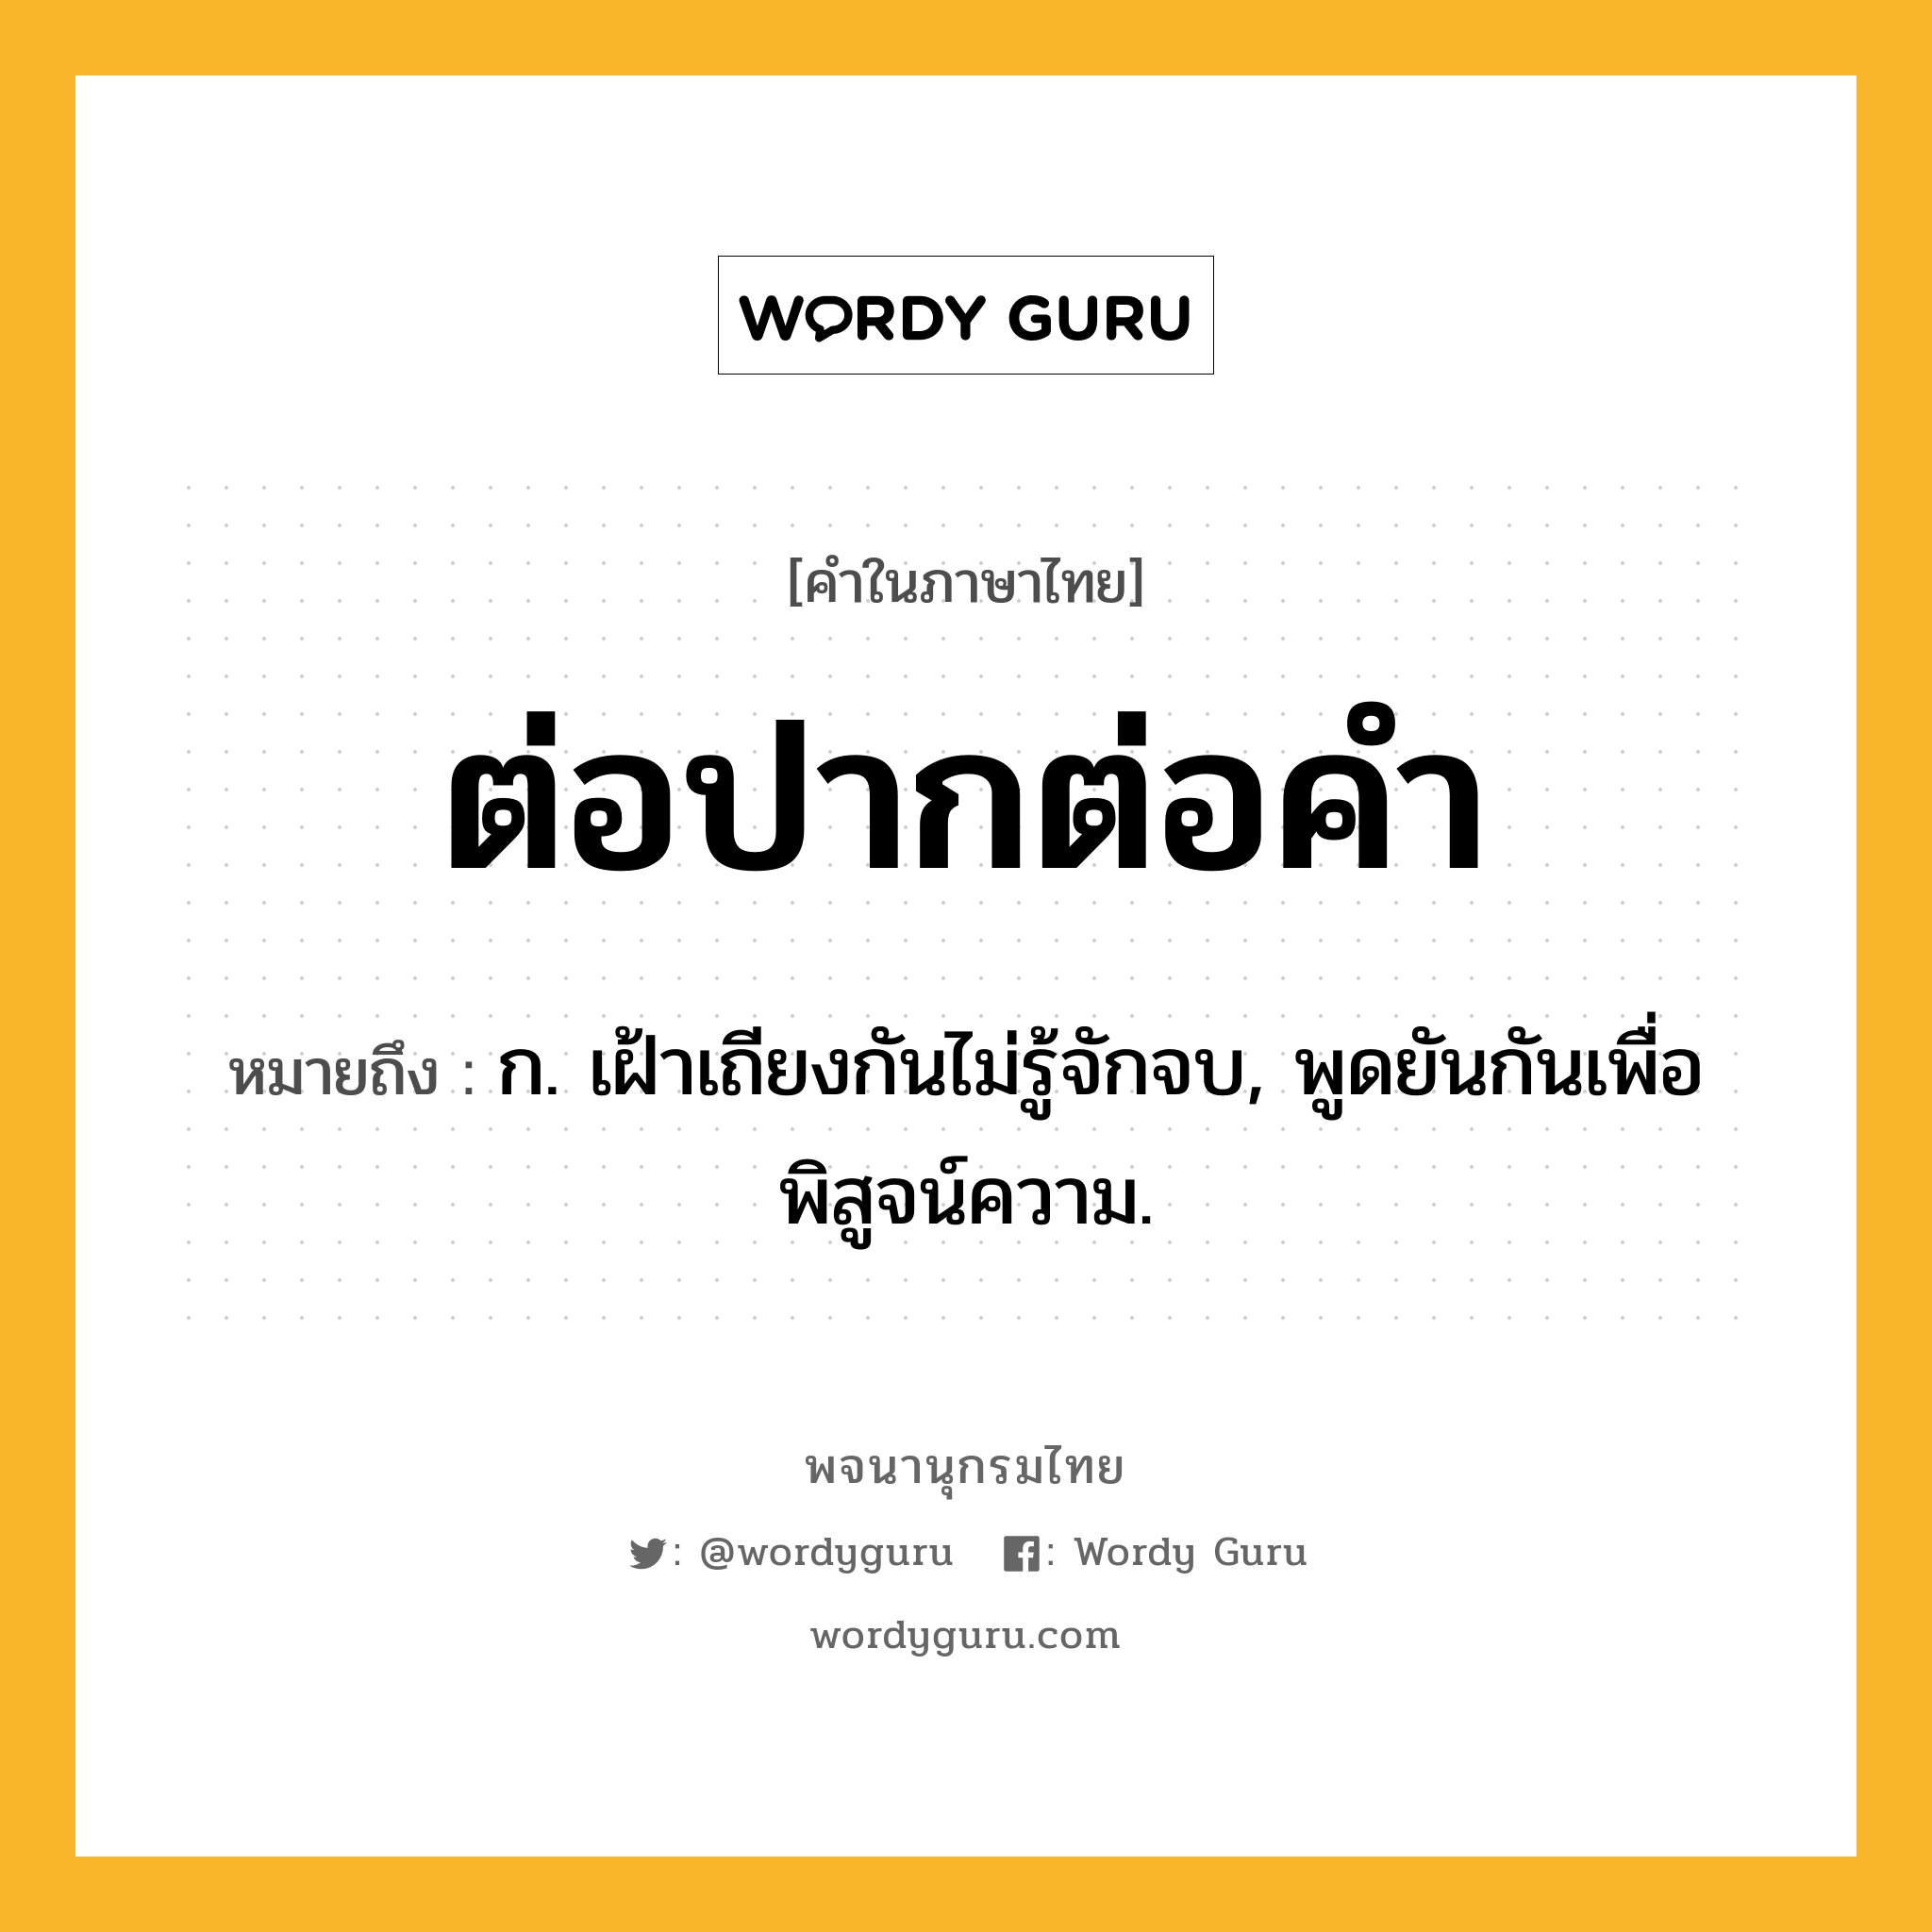 ต่อปากต่อคำ หมายถึงอะไร?, คำในภาษาไทย ต่อปากต่อคำ หมายถึง ก. เฝ้าเถียงกันไม่รู้จักจบ, พูดยันกันเพื่อพิสูจน์ความ.